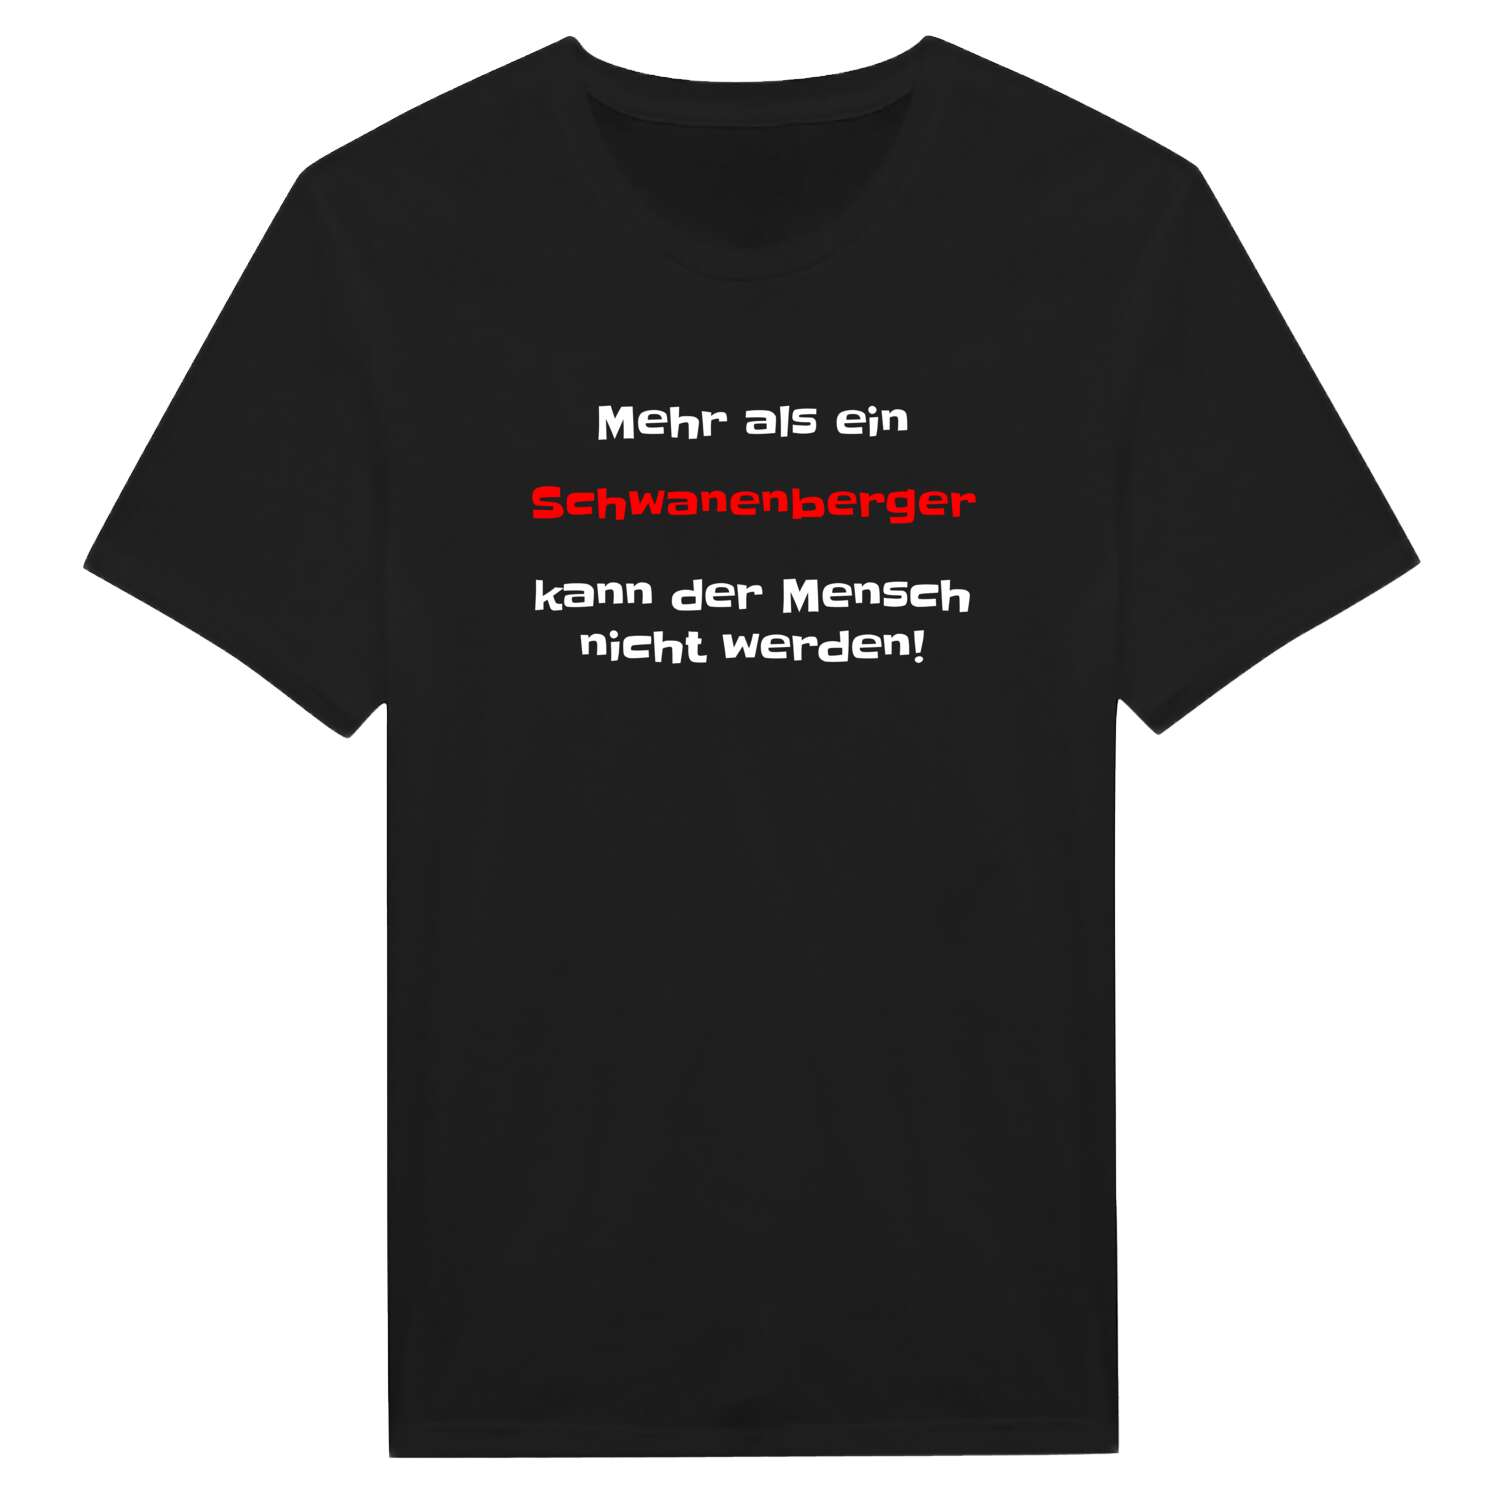 Schwanenberg T-Shirt »Mehr als ein«